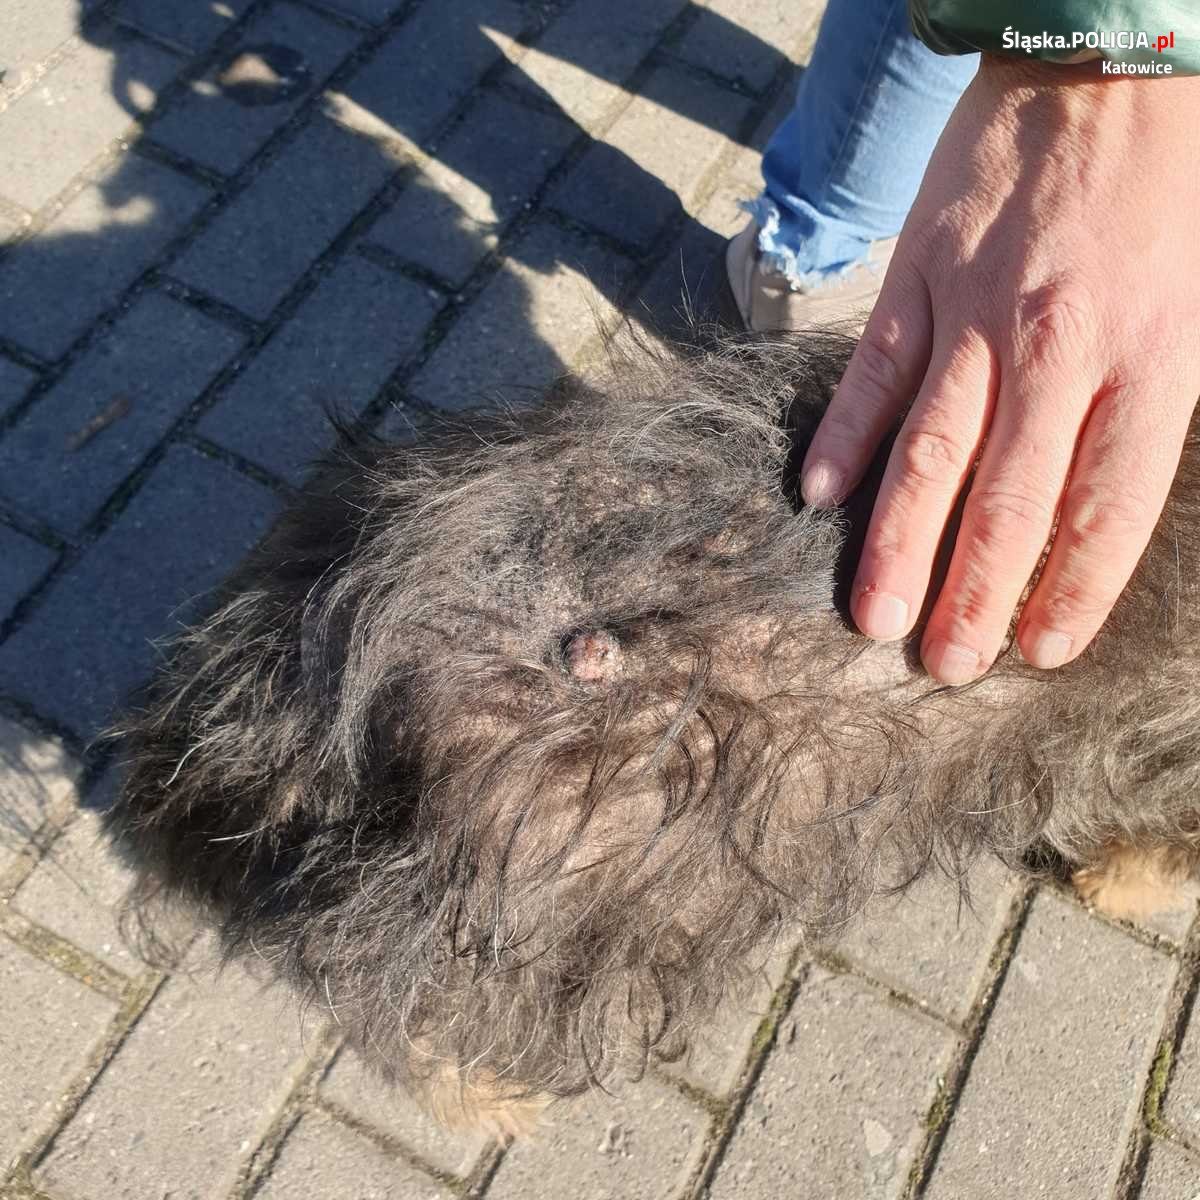 Zaniedbany pies Katowice Załęże